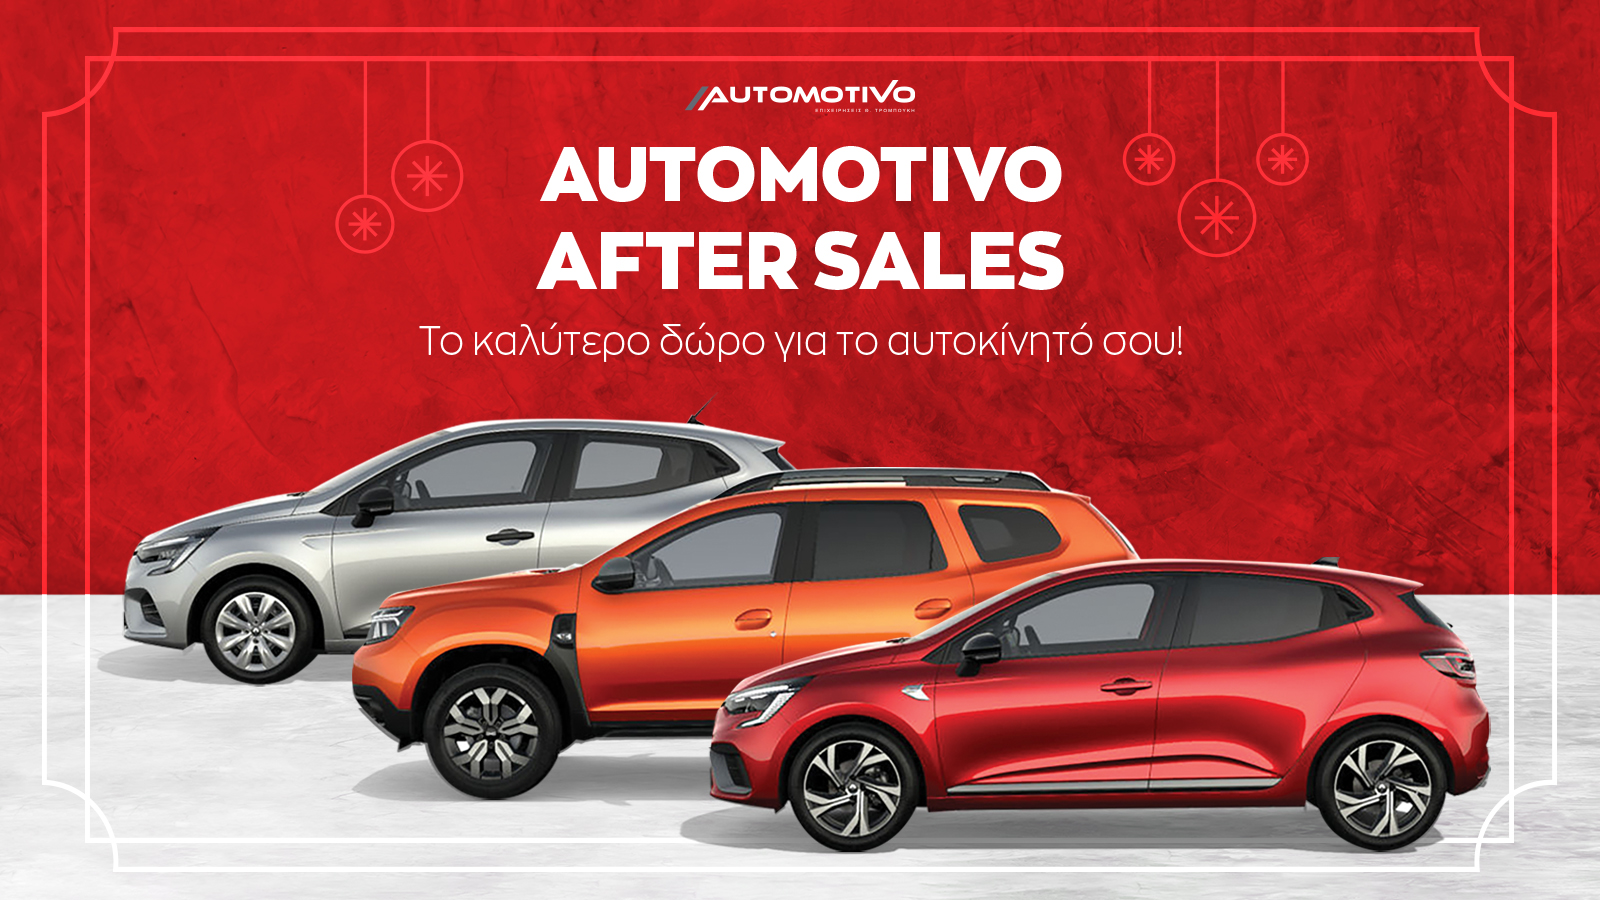 Automotivo After Sales: Το καλύτερο δώρο για το αυτοκίνητό σου αυτές τις γιορτές